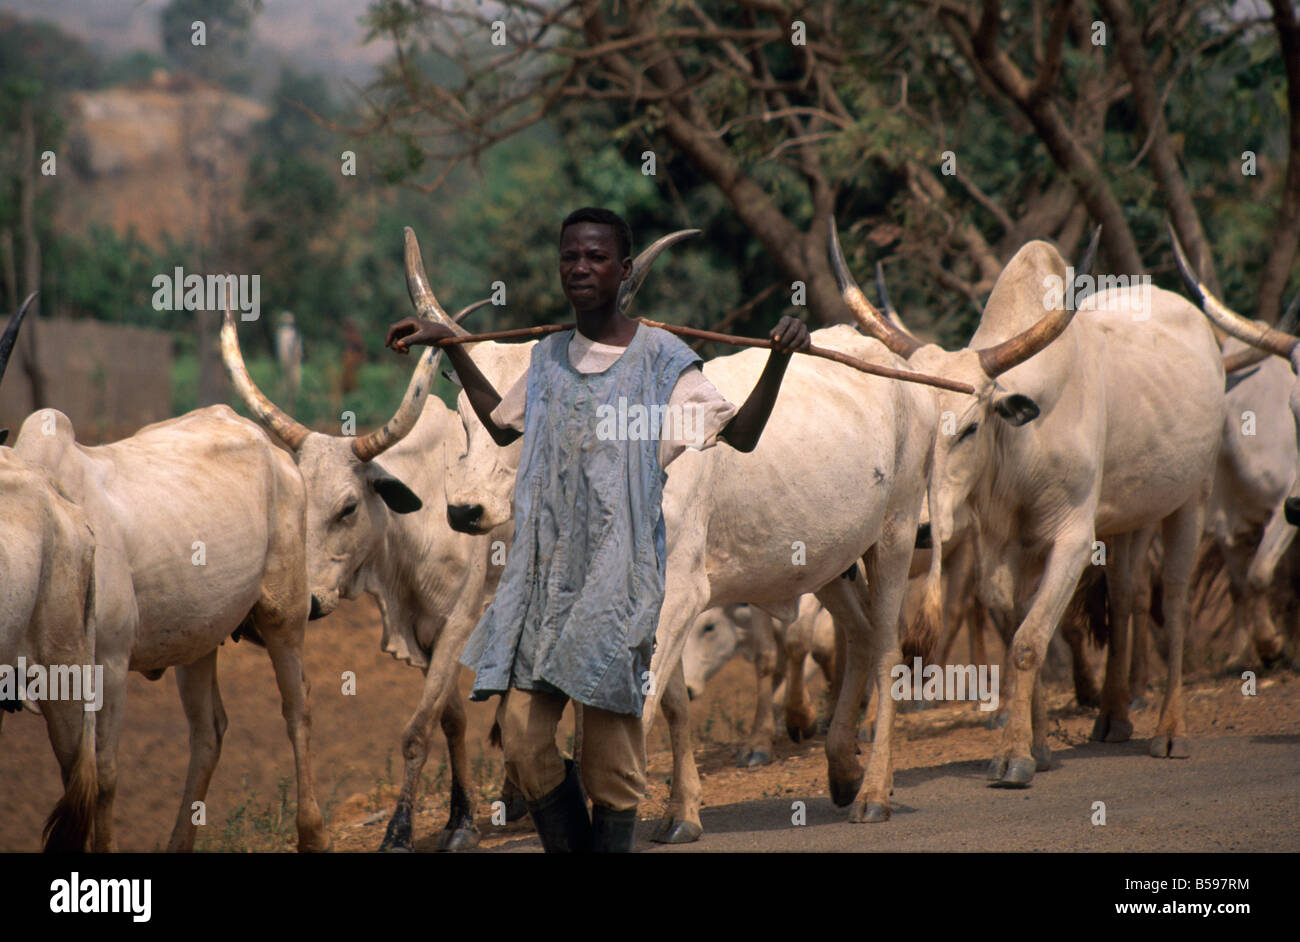 Agriculteur éleveur de vache garçon avec stick et le bétail à cornes longue balade le long d'une route à Kaduna Nigeria Afrique Banque D'Images